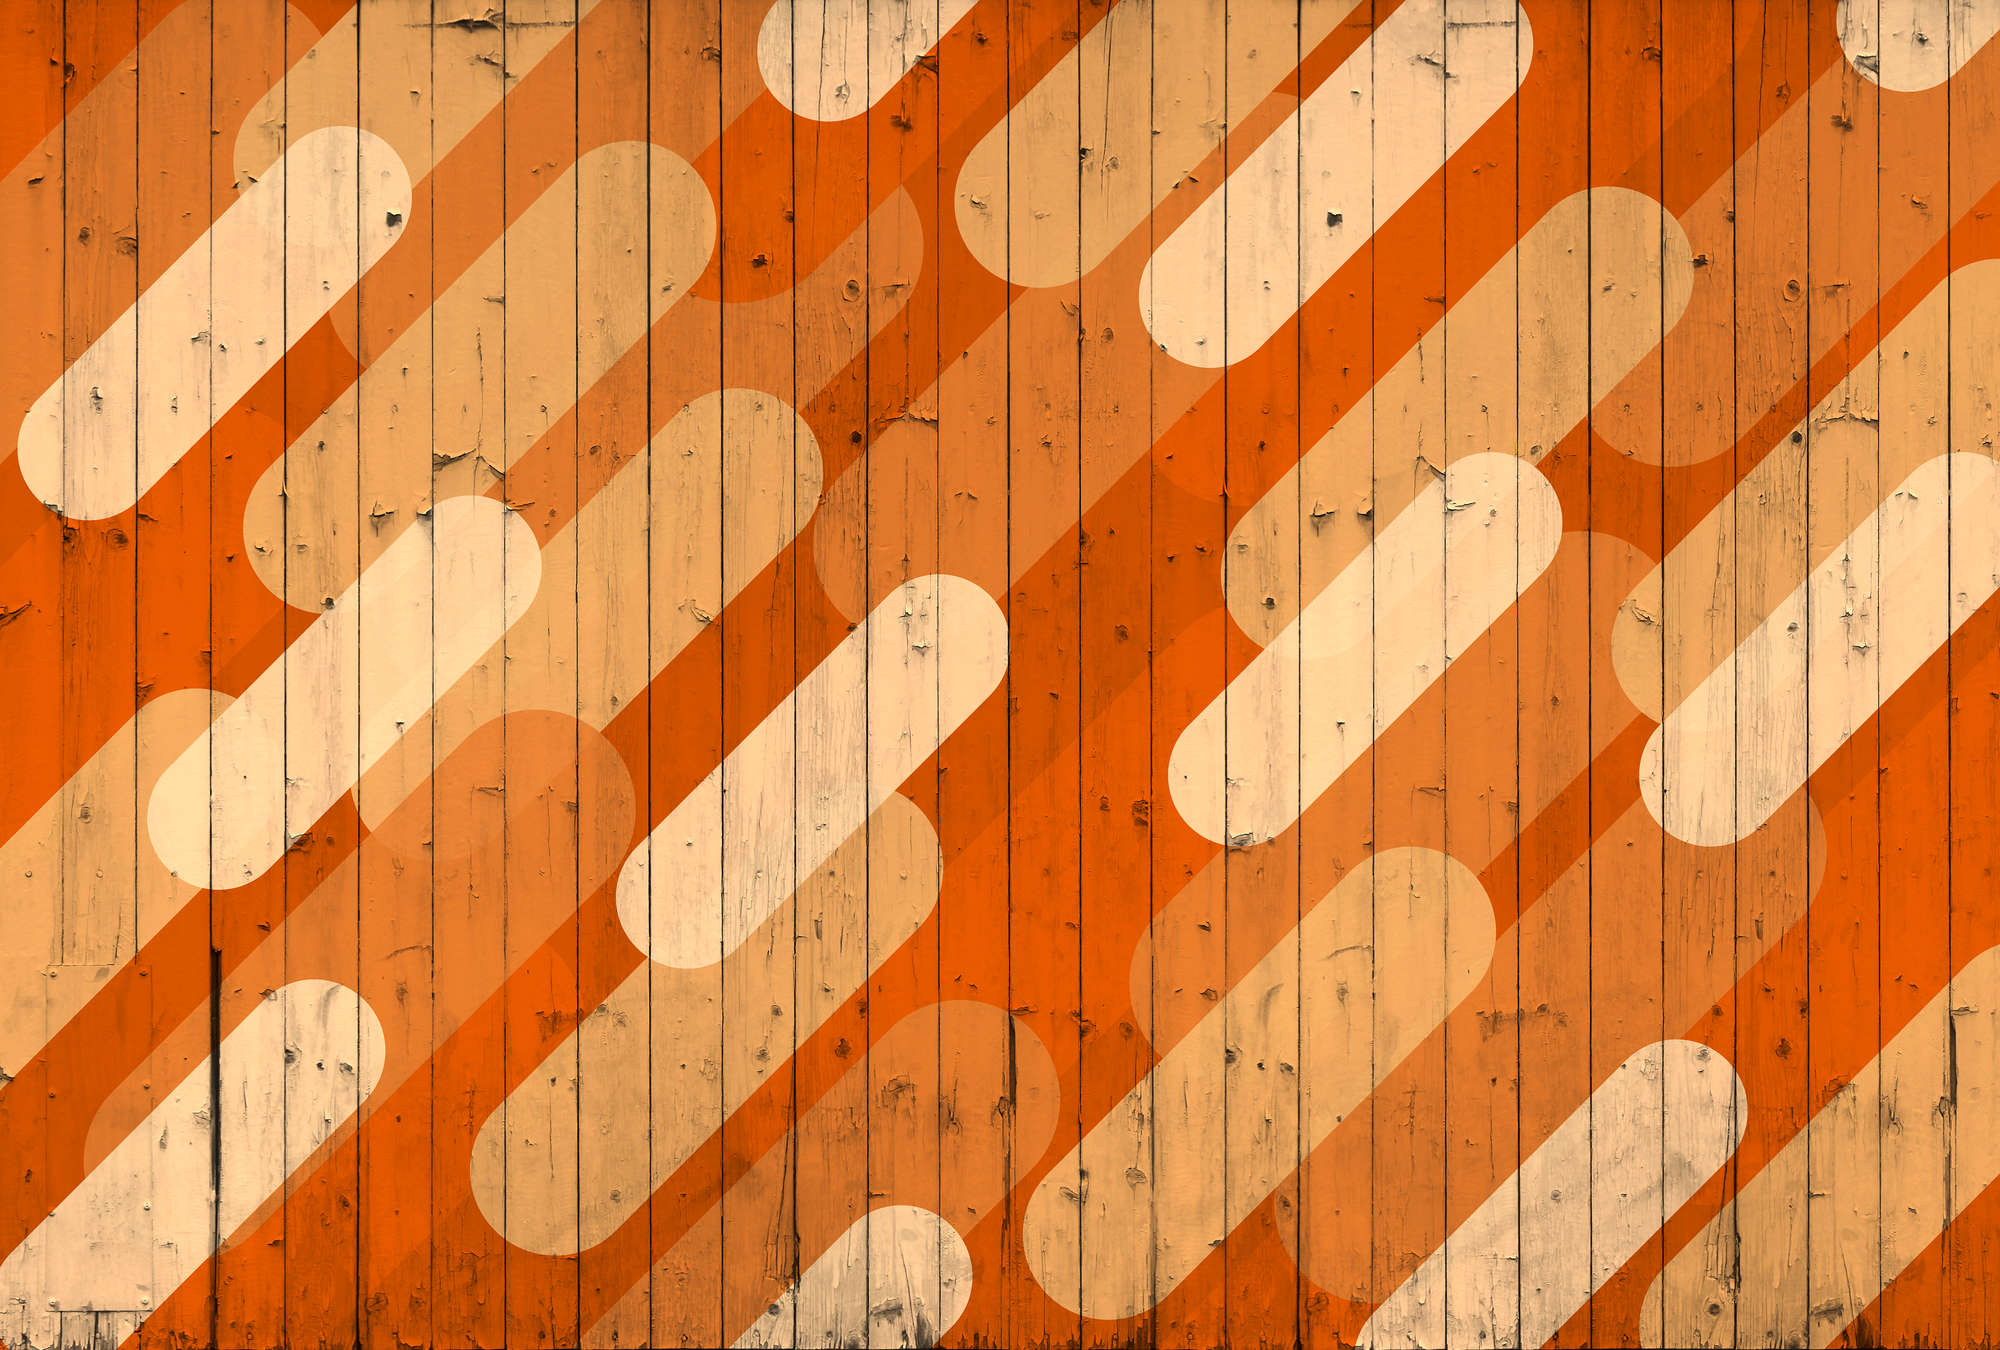             Papier peint panoramique imitation planche & motif à rayures obliques - orange, beige, crème
        